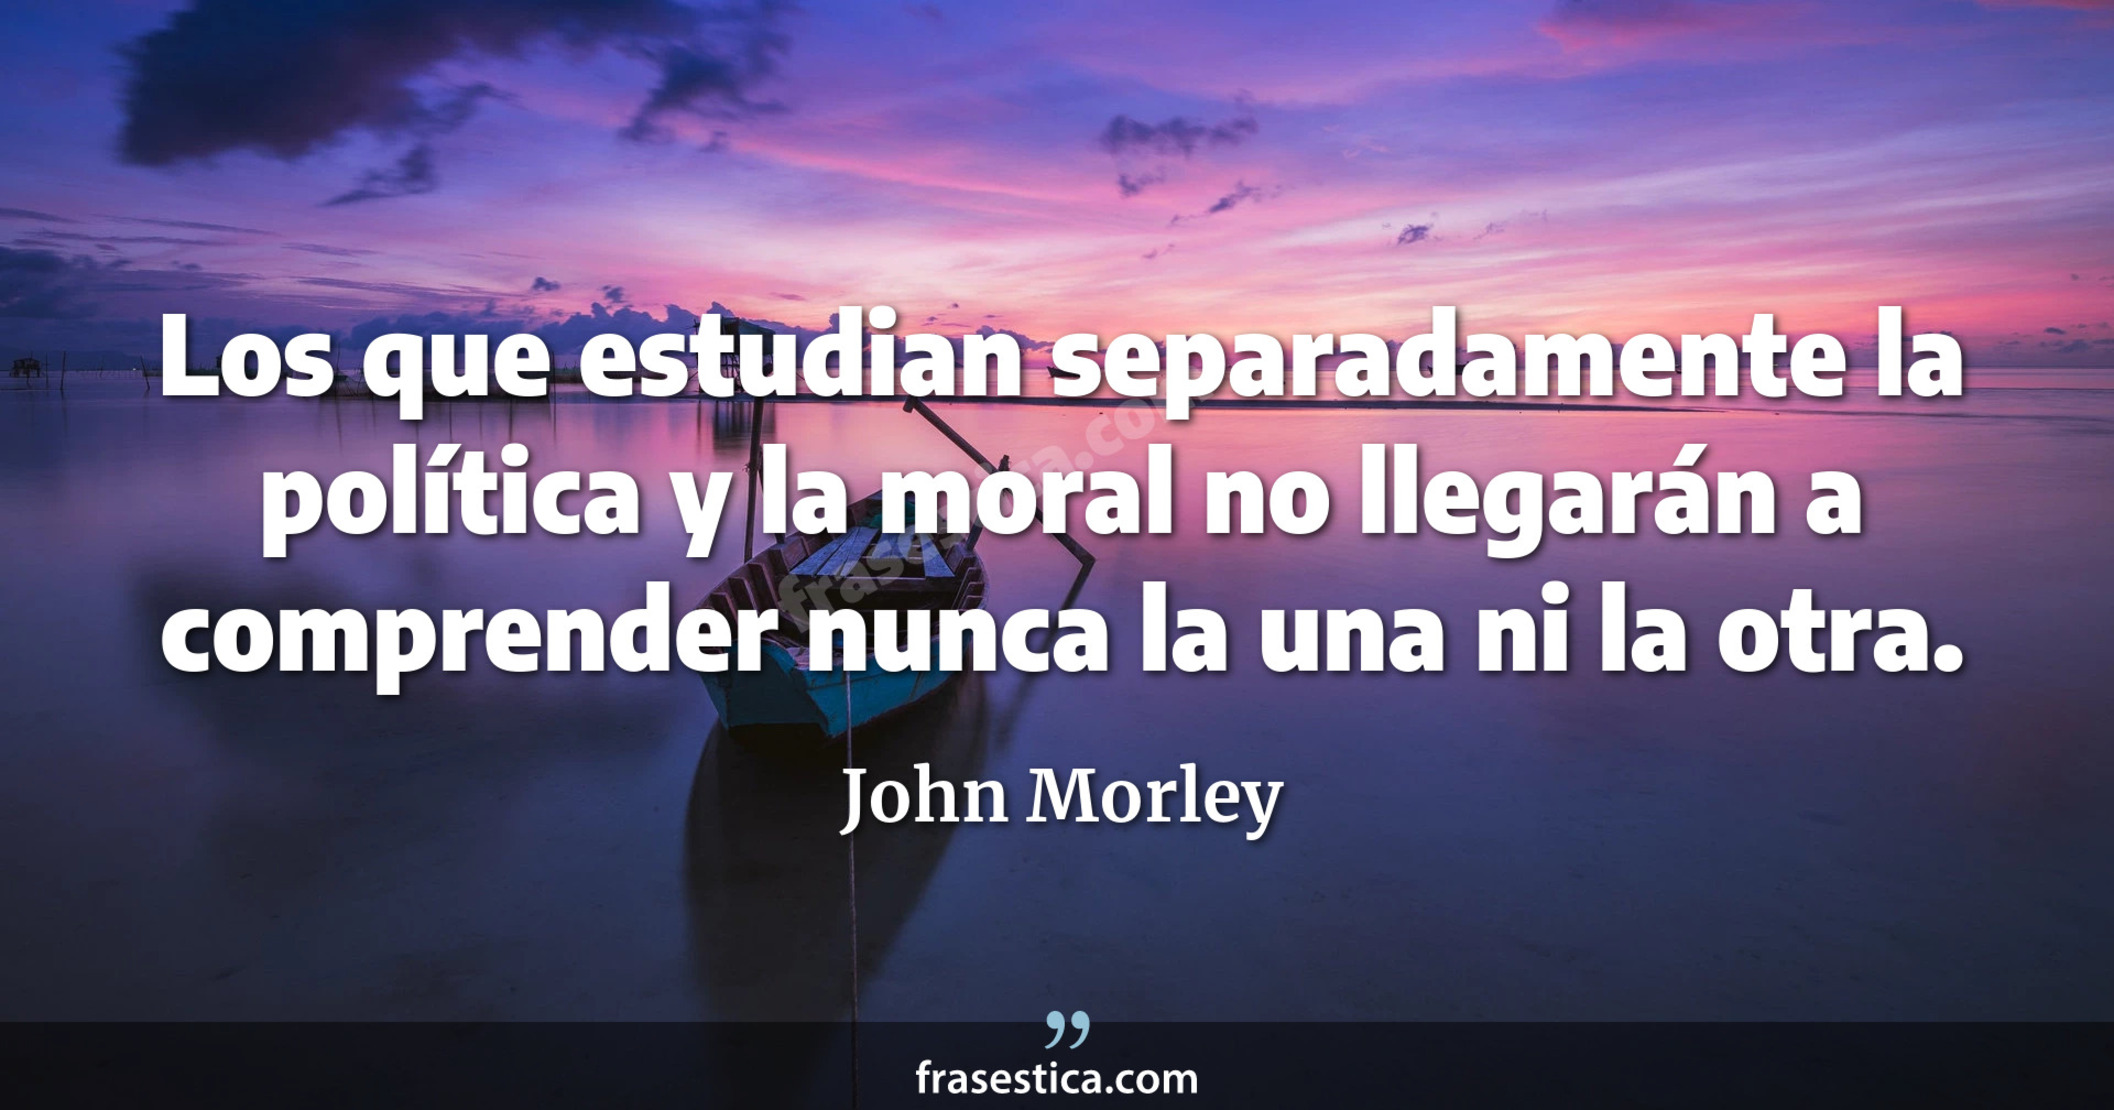 Los que estudian separadamente la política y la moral no llegarán a comprender nunca la una ni la otra. - John Morley